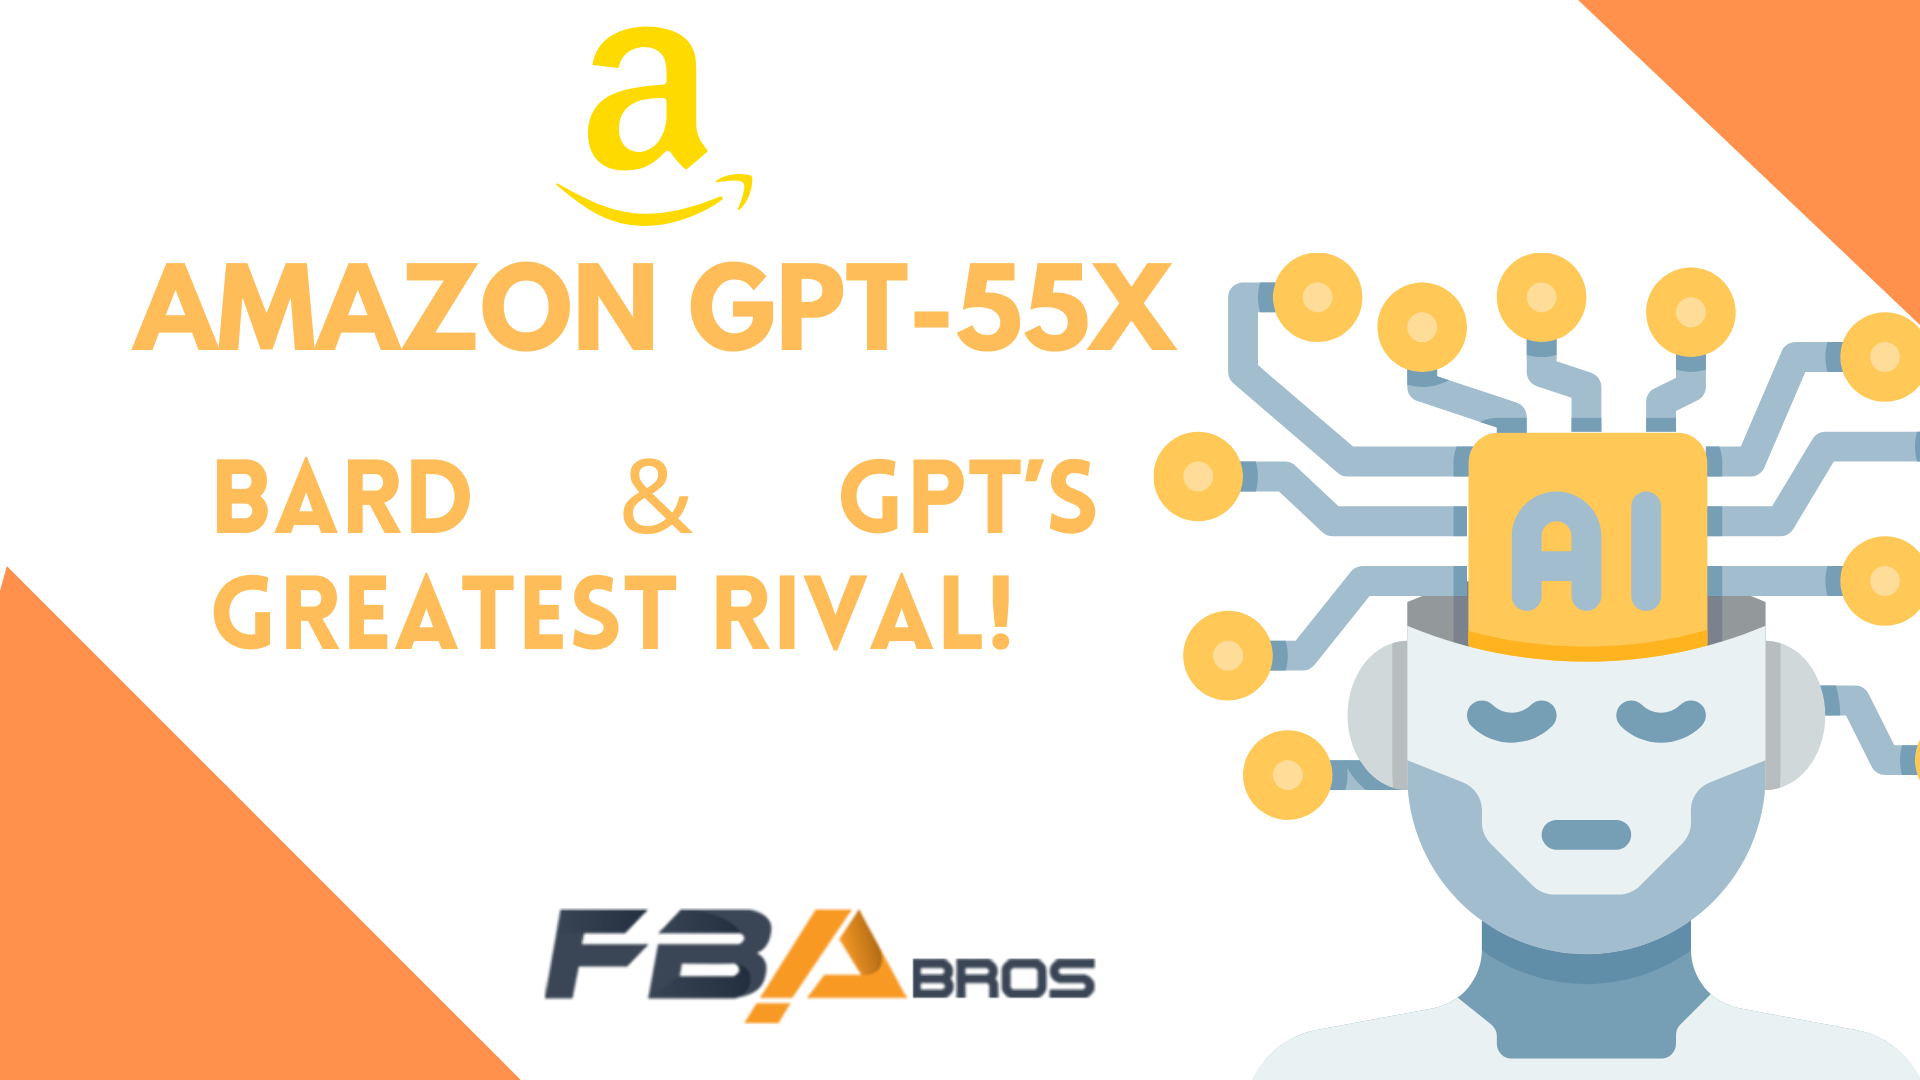 Amazon GPT-55X